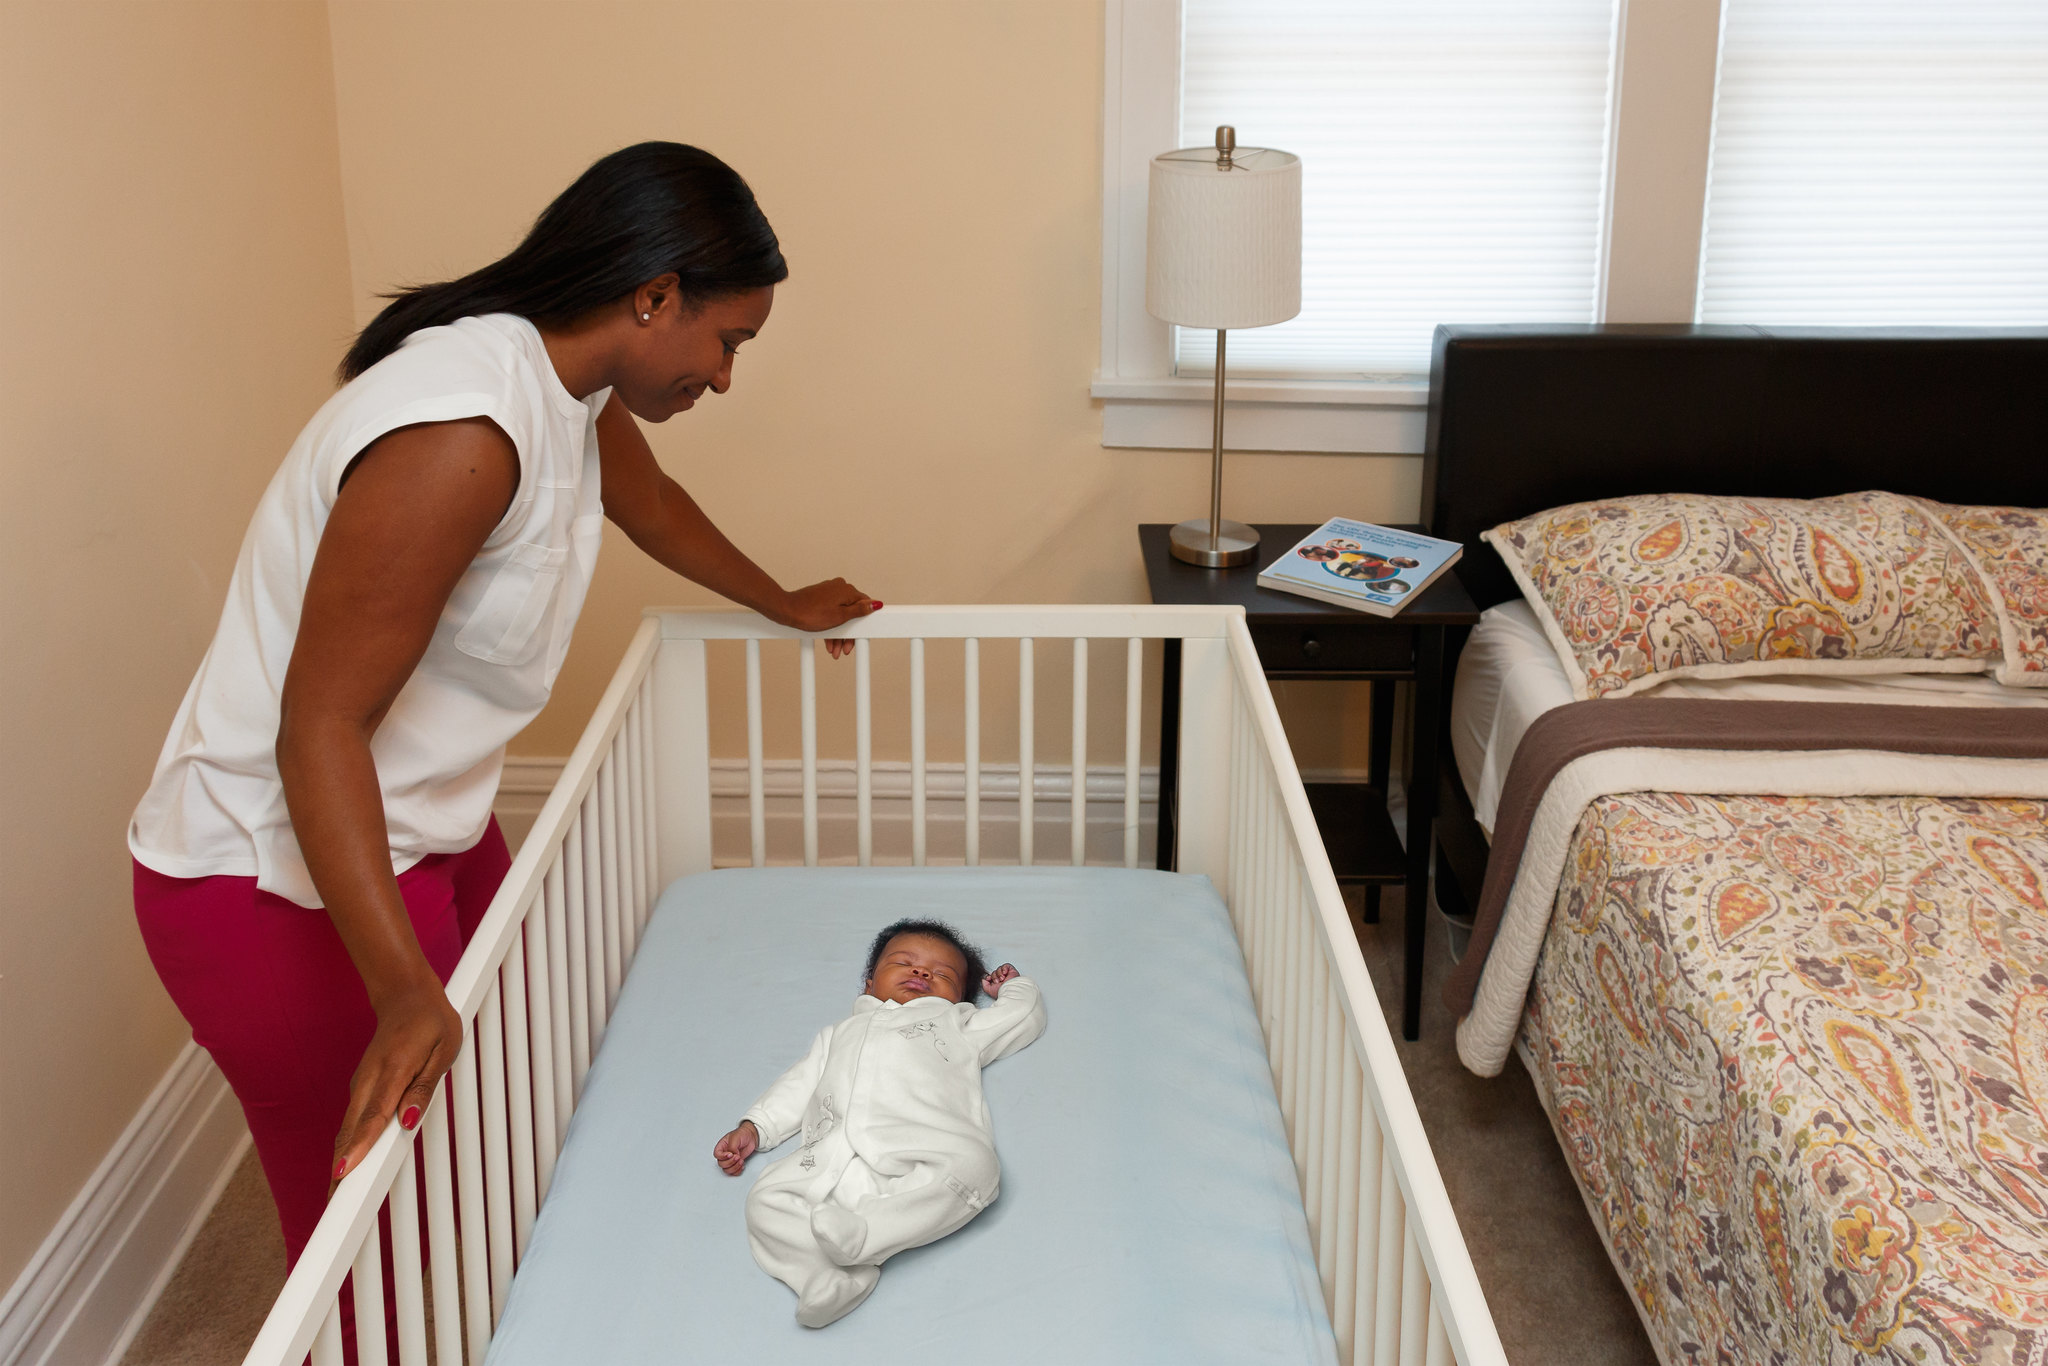 Una mujer mira a un bebé que duerme boca arriba en una cuna que no incluye ropa de cama blanda o suelta, protectores de cuna, juguetes u otros objetos en el área para dormir.